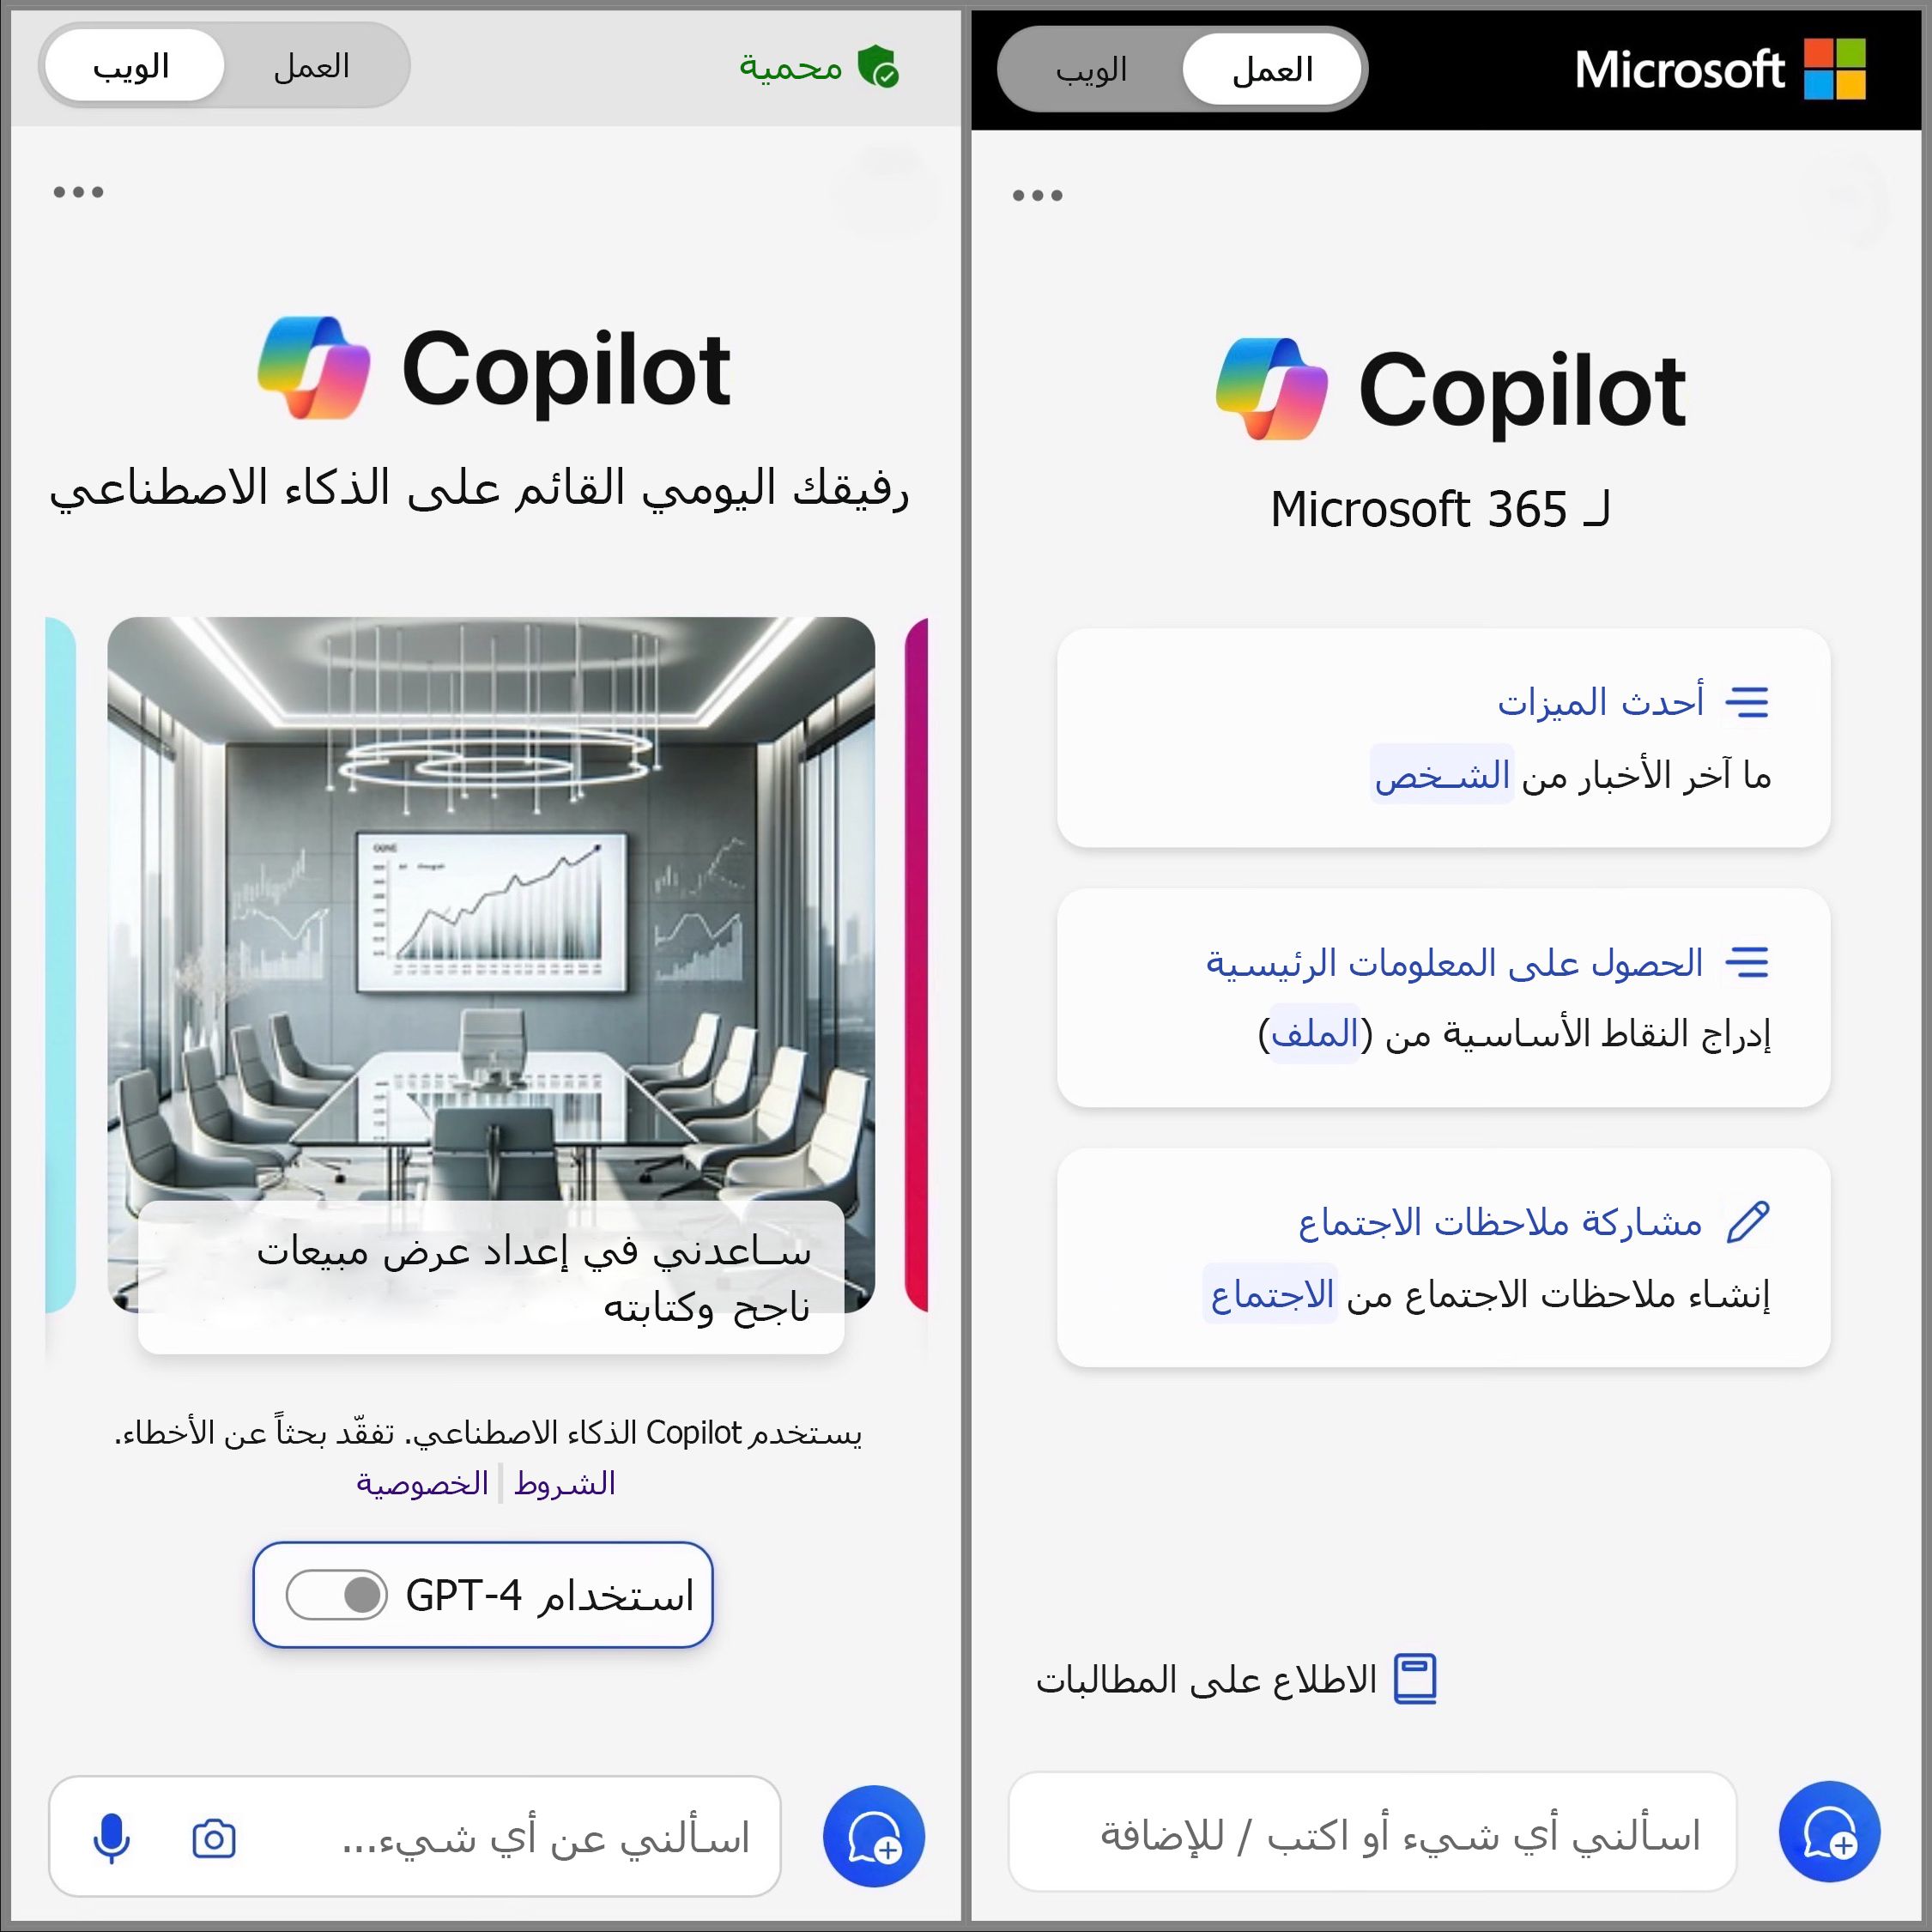 يظهر شاشة Copilot للأجهزة المحمولة التي تم تبديلها إلى الويب والعمل للوصول إلى دردشة المطالبات.